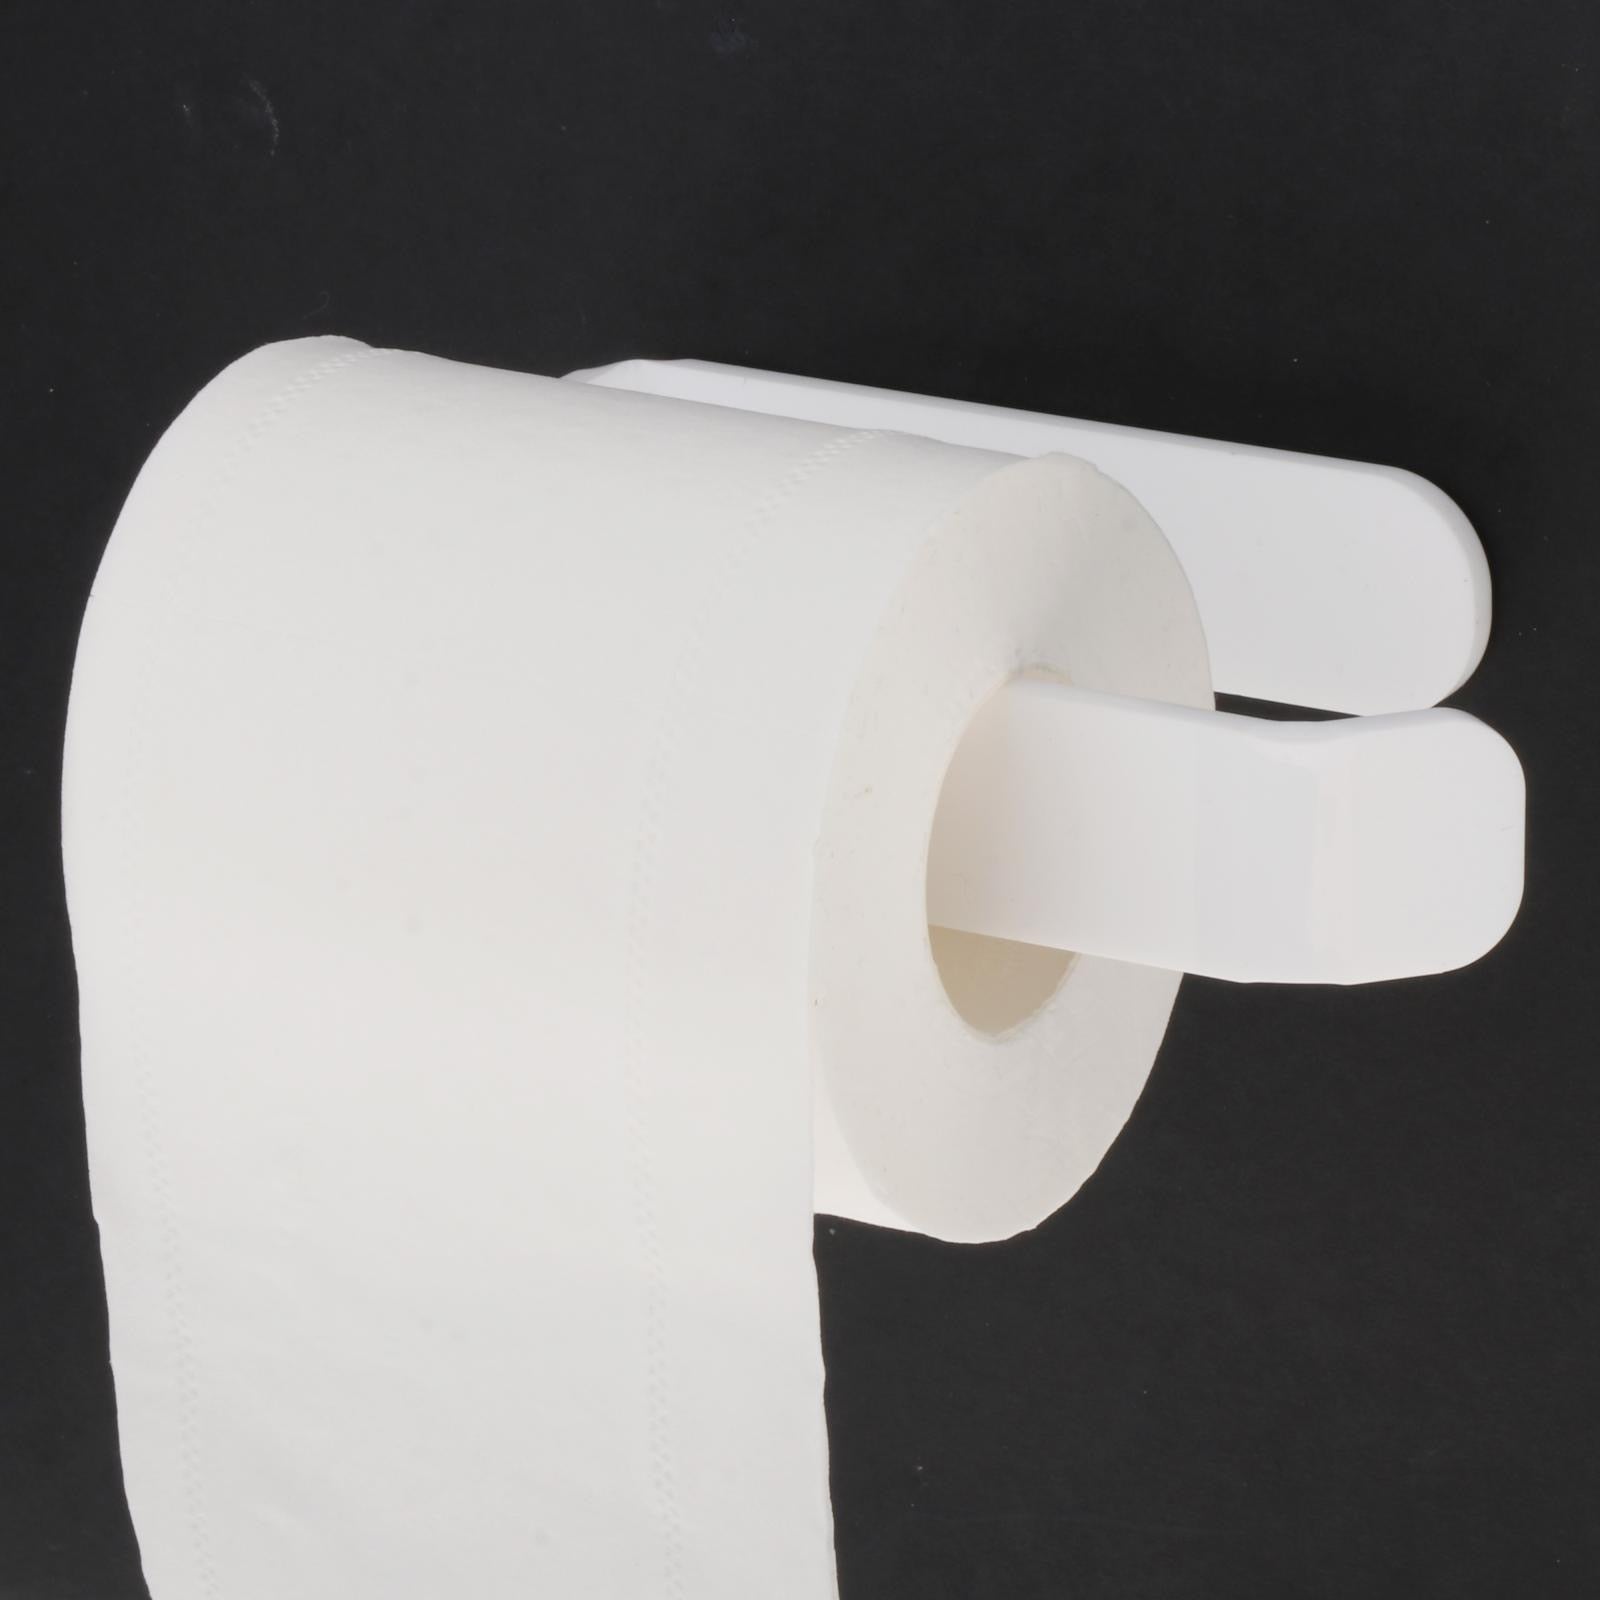 Toilet Paper Holder Brushed Nickel for Bathroom, Kitchen, Washroom Wall Mount